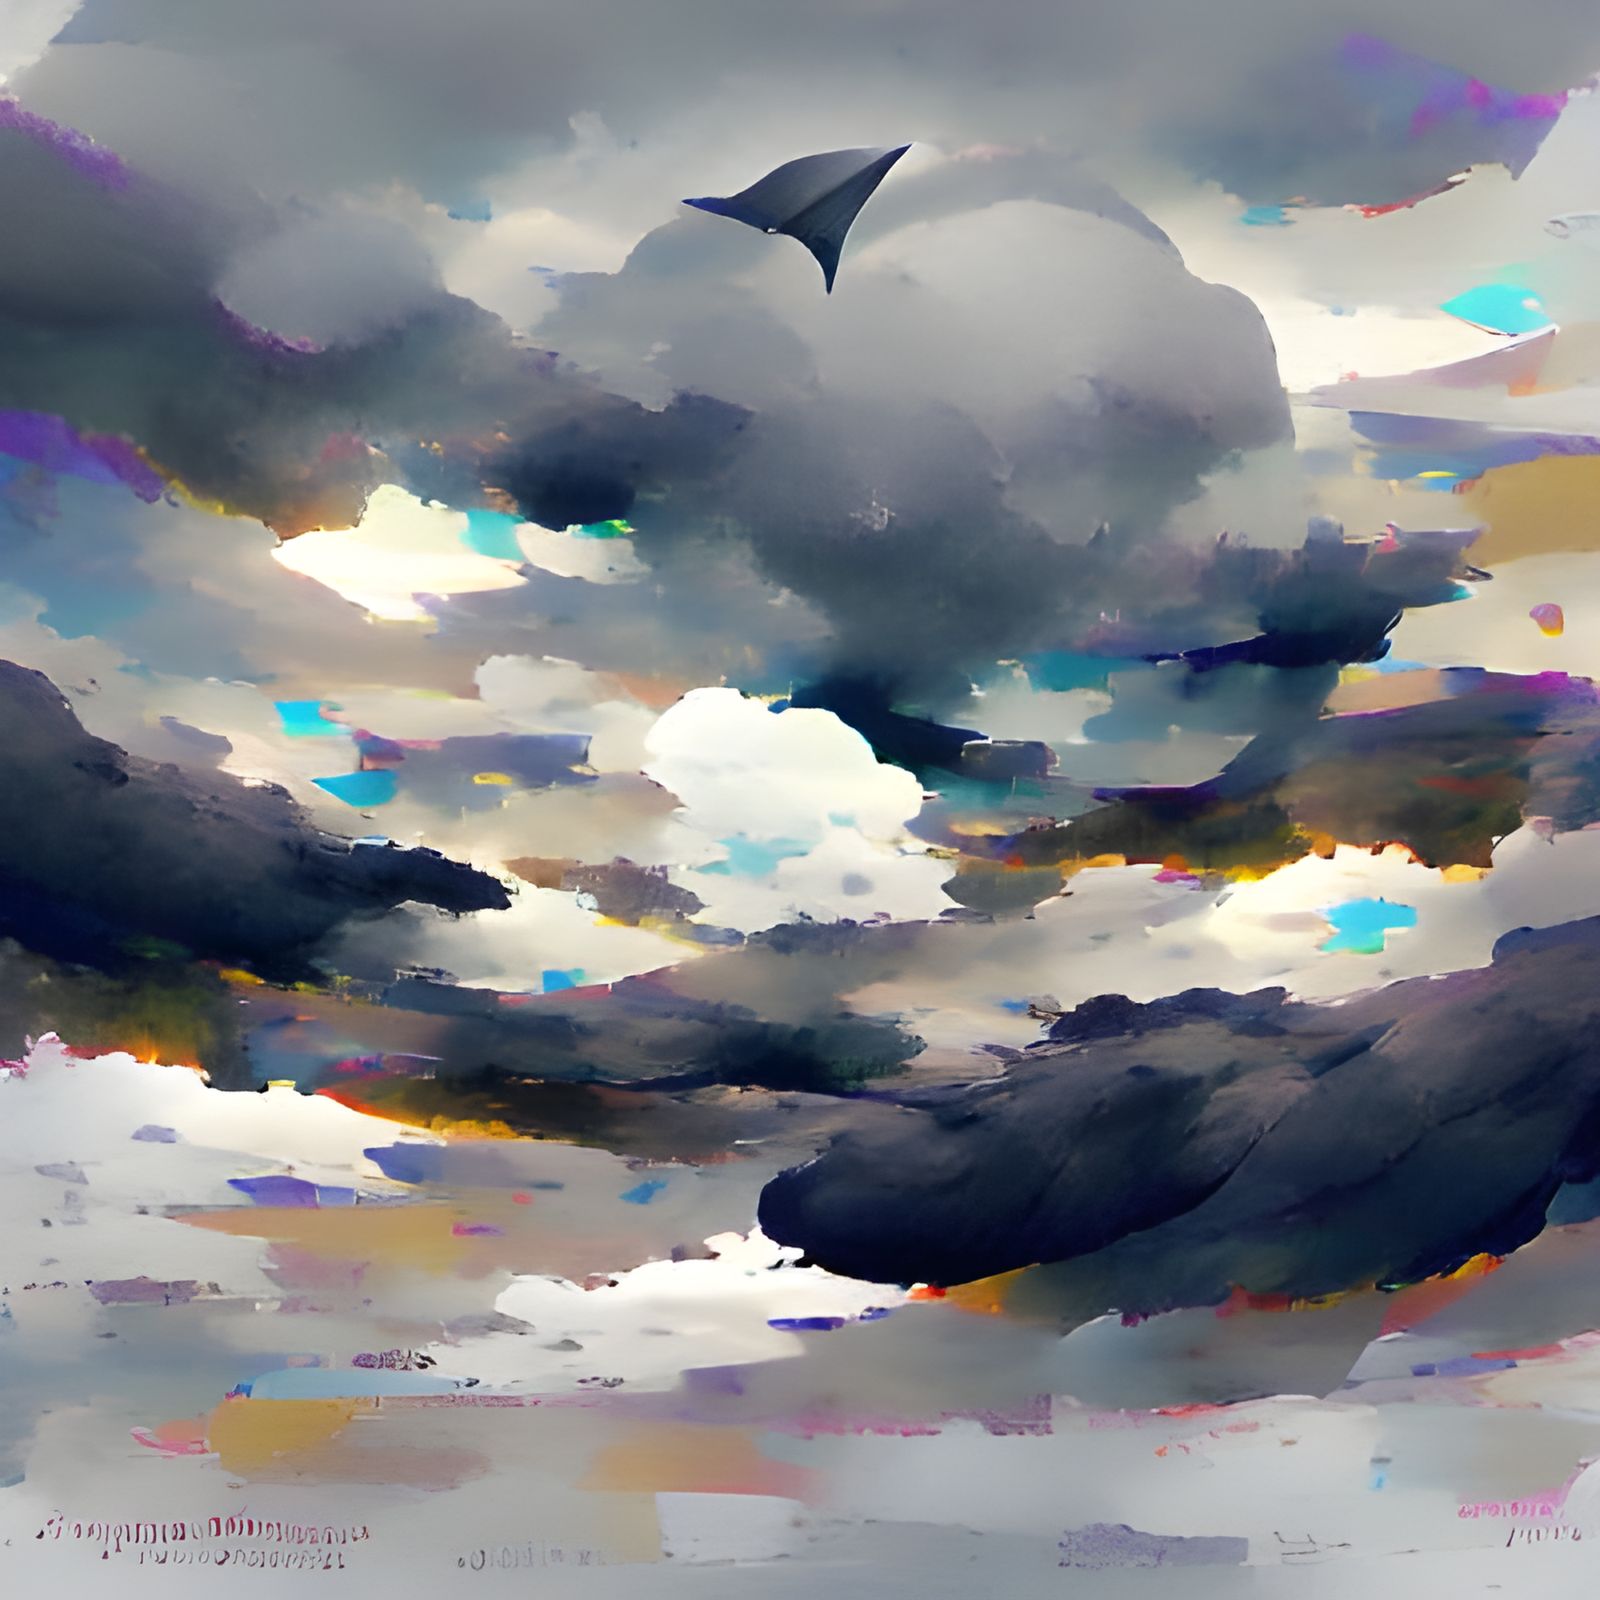 Beyond the Gray Sky